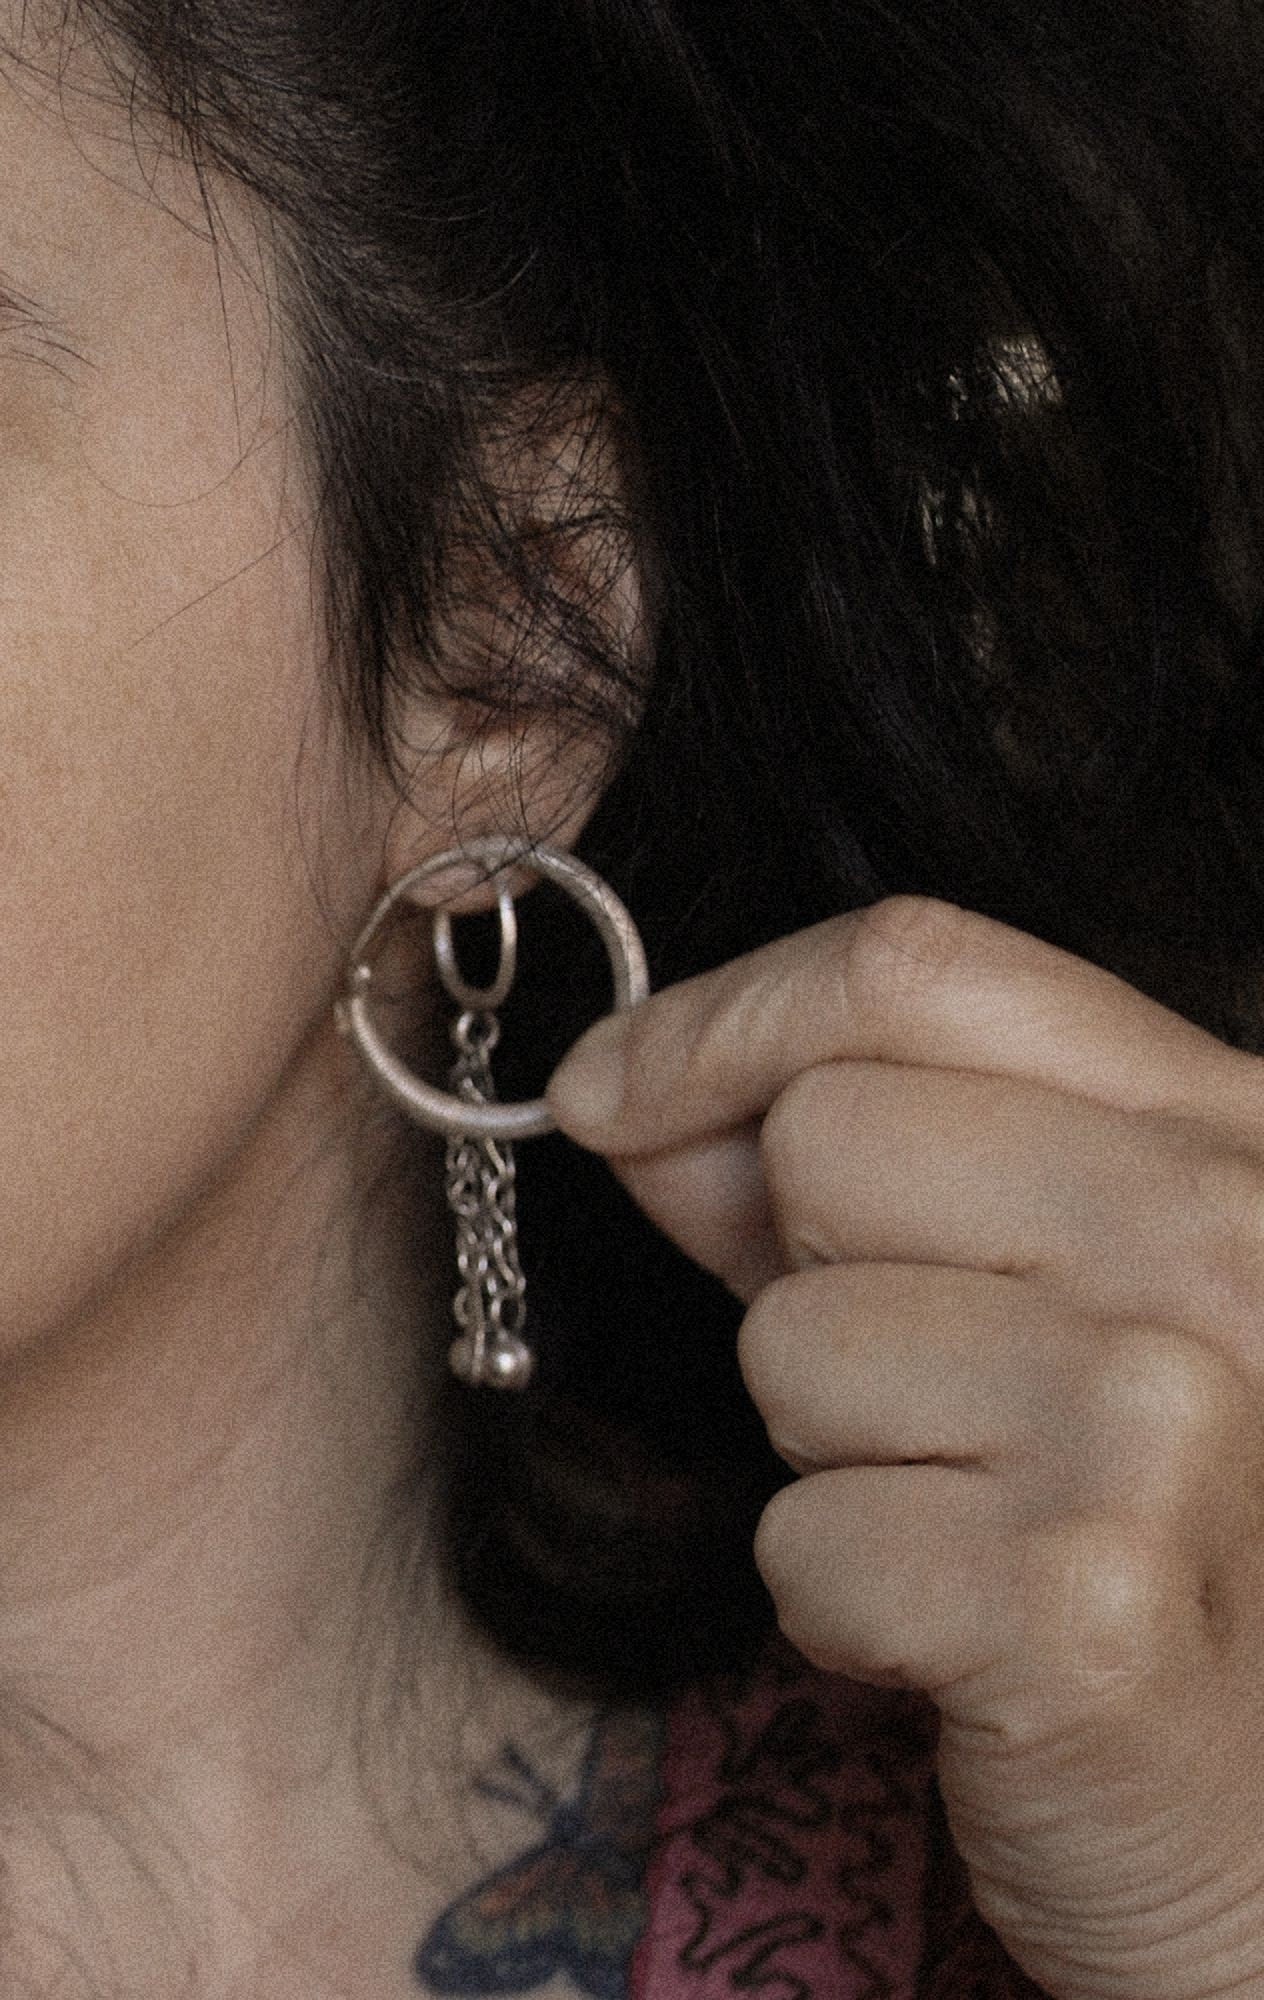 Antique Afghani Hoop Earrings - Kuchi Hoop Earrings - Tribal Hoop Earrings - Afghani Earrings - Afghani Jewelry - Ethnic Hoop Earrings